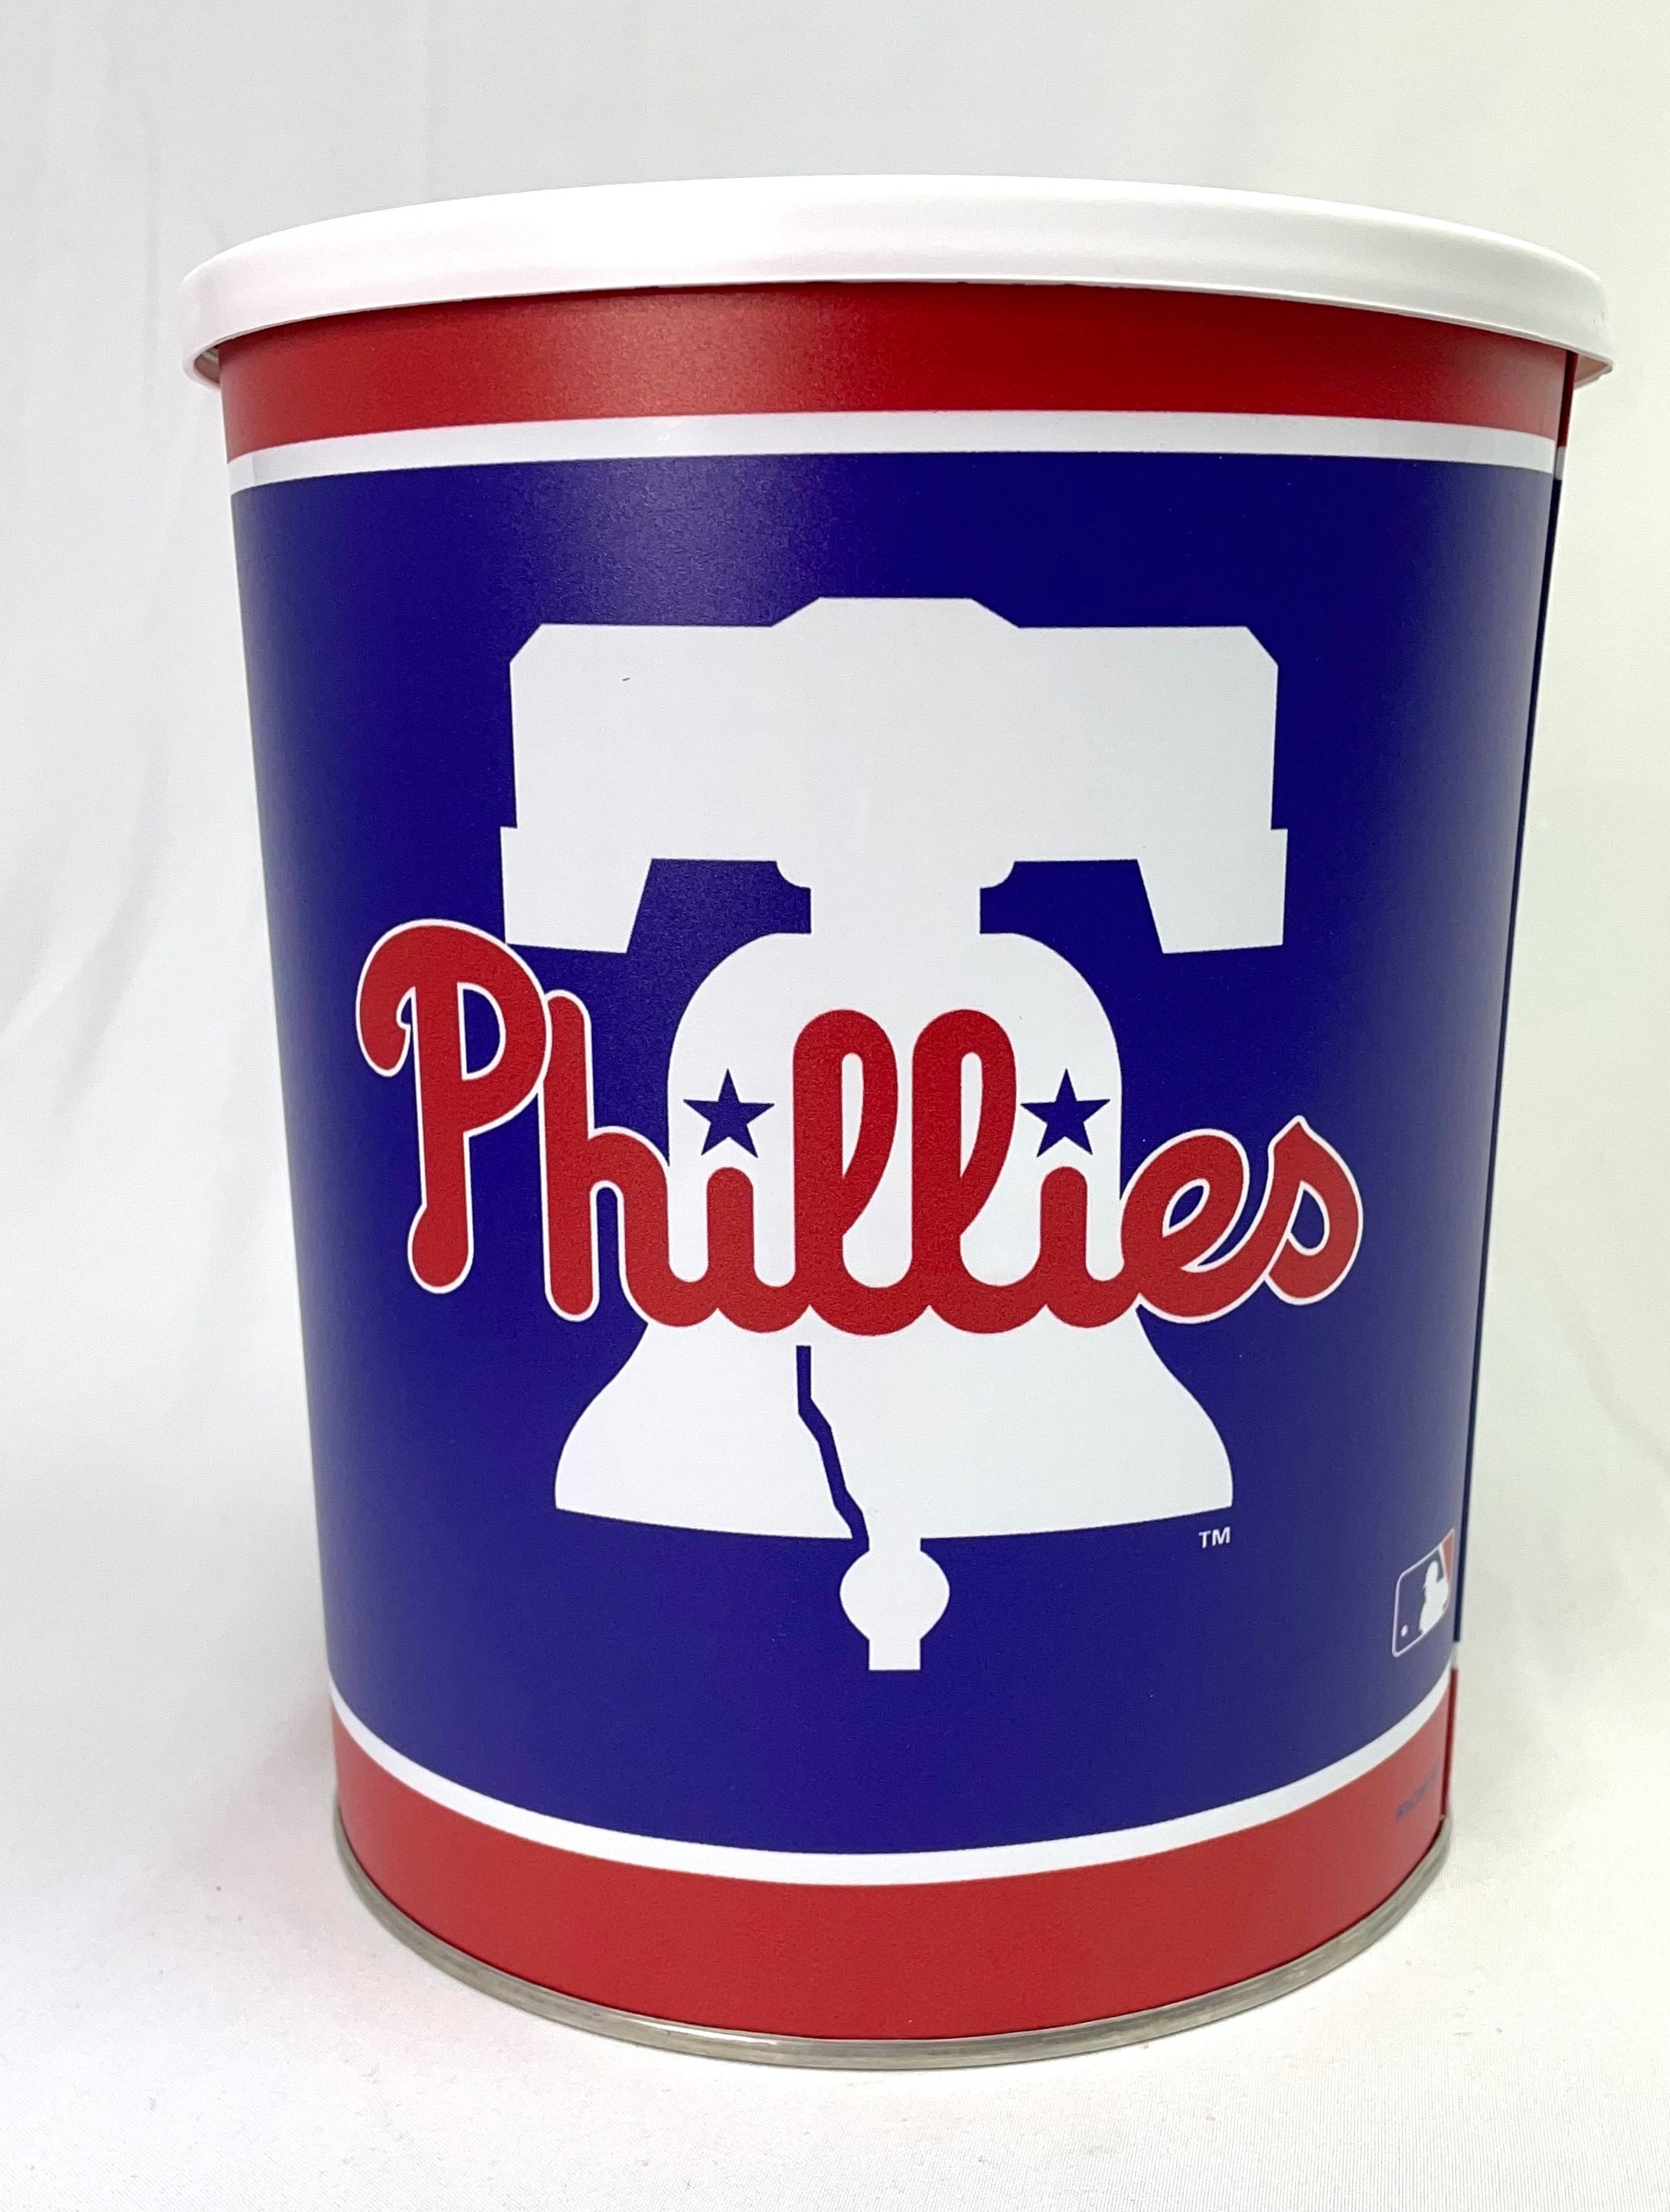 Philadelphia Phillies National League Champs 2022 Logo Svg